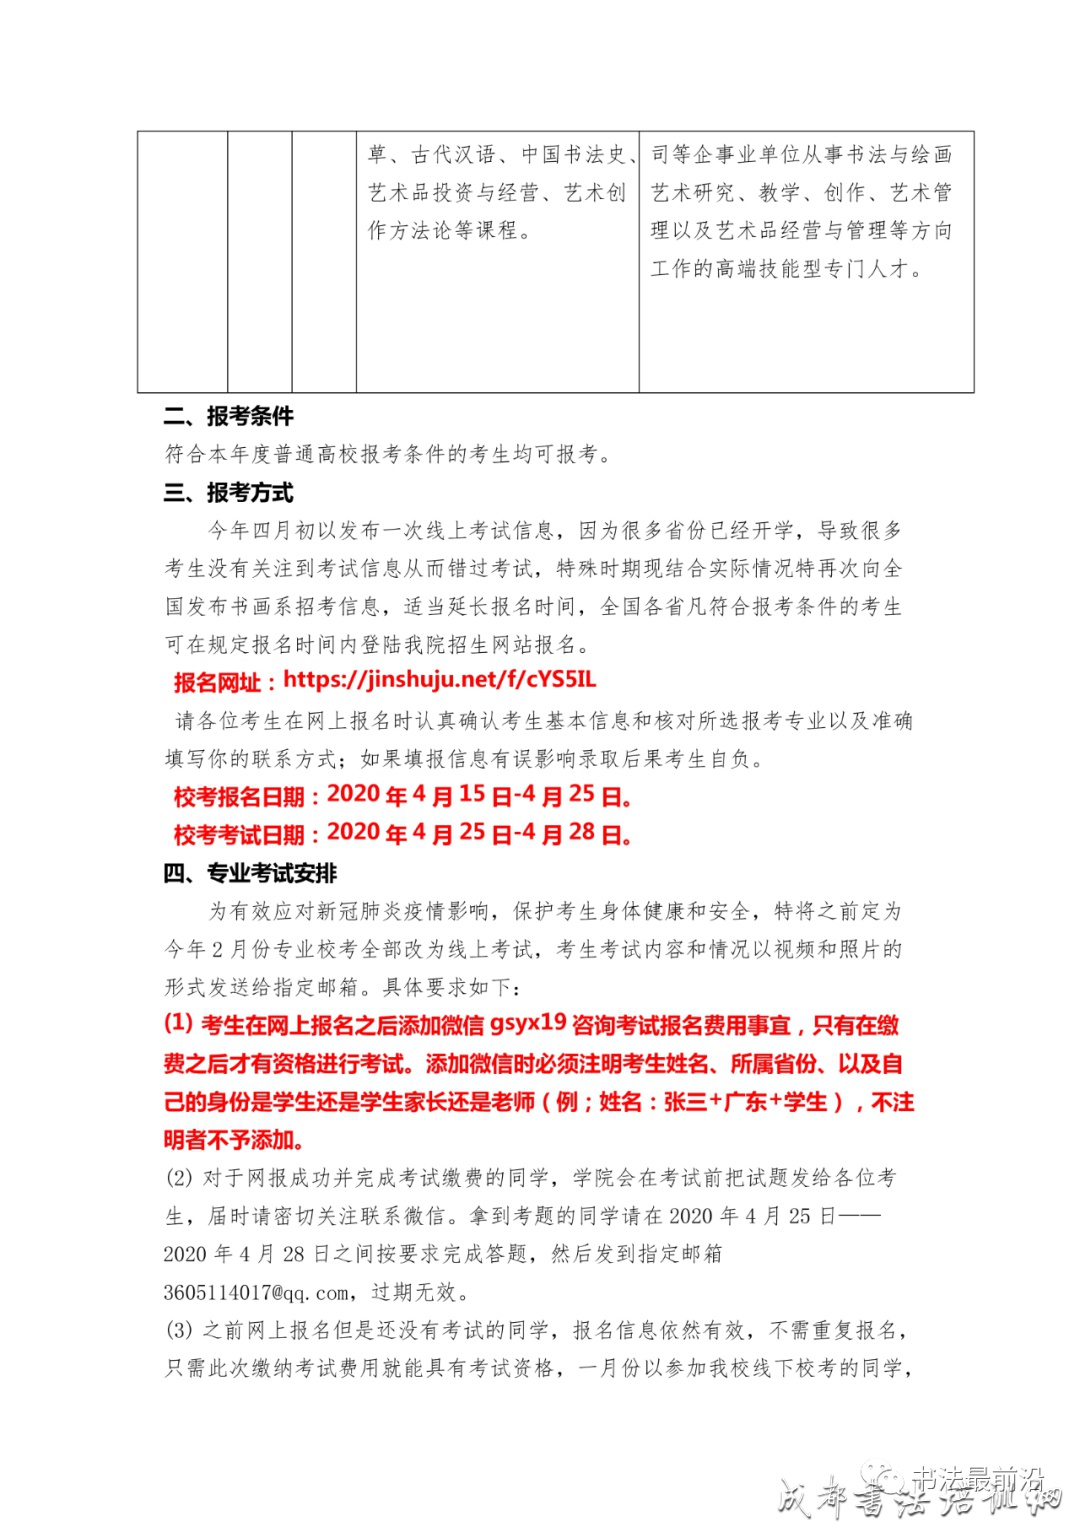 校考快讯 | 北京科技经营管理学院电影艺术学院2020年书画系专业考试调整方案